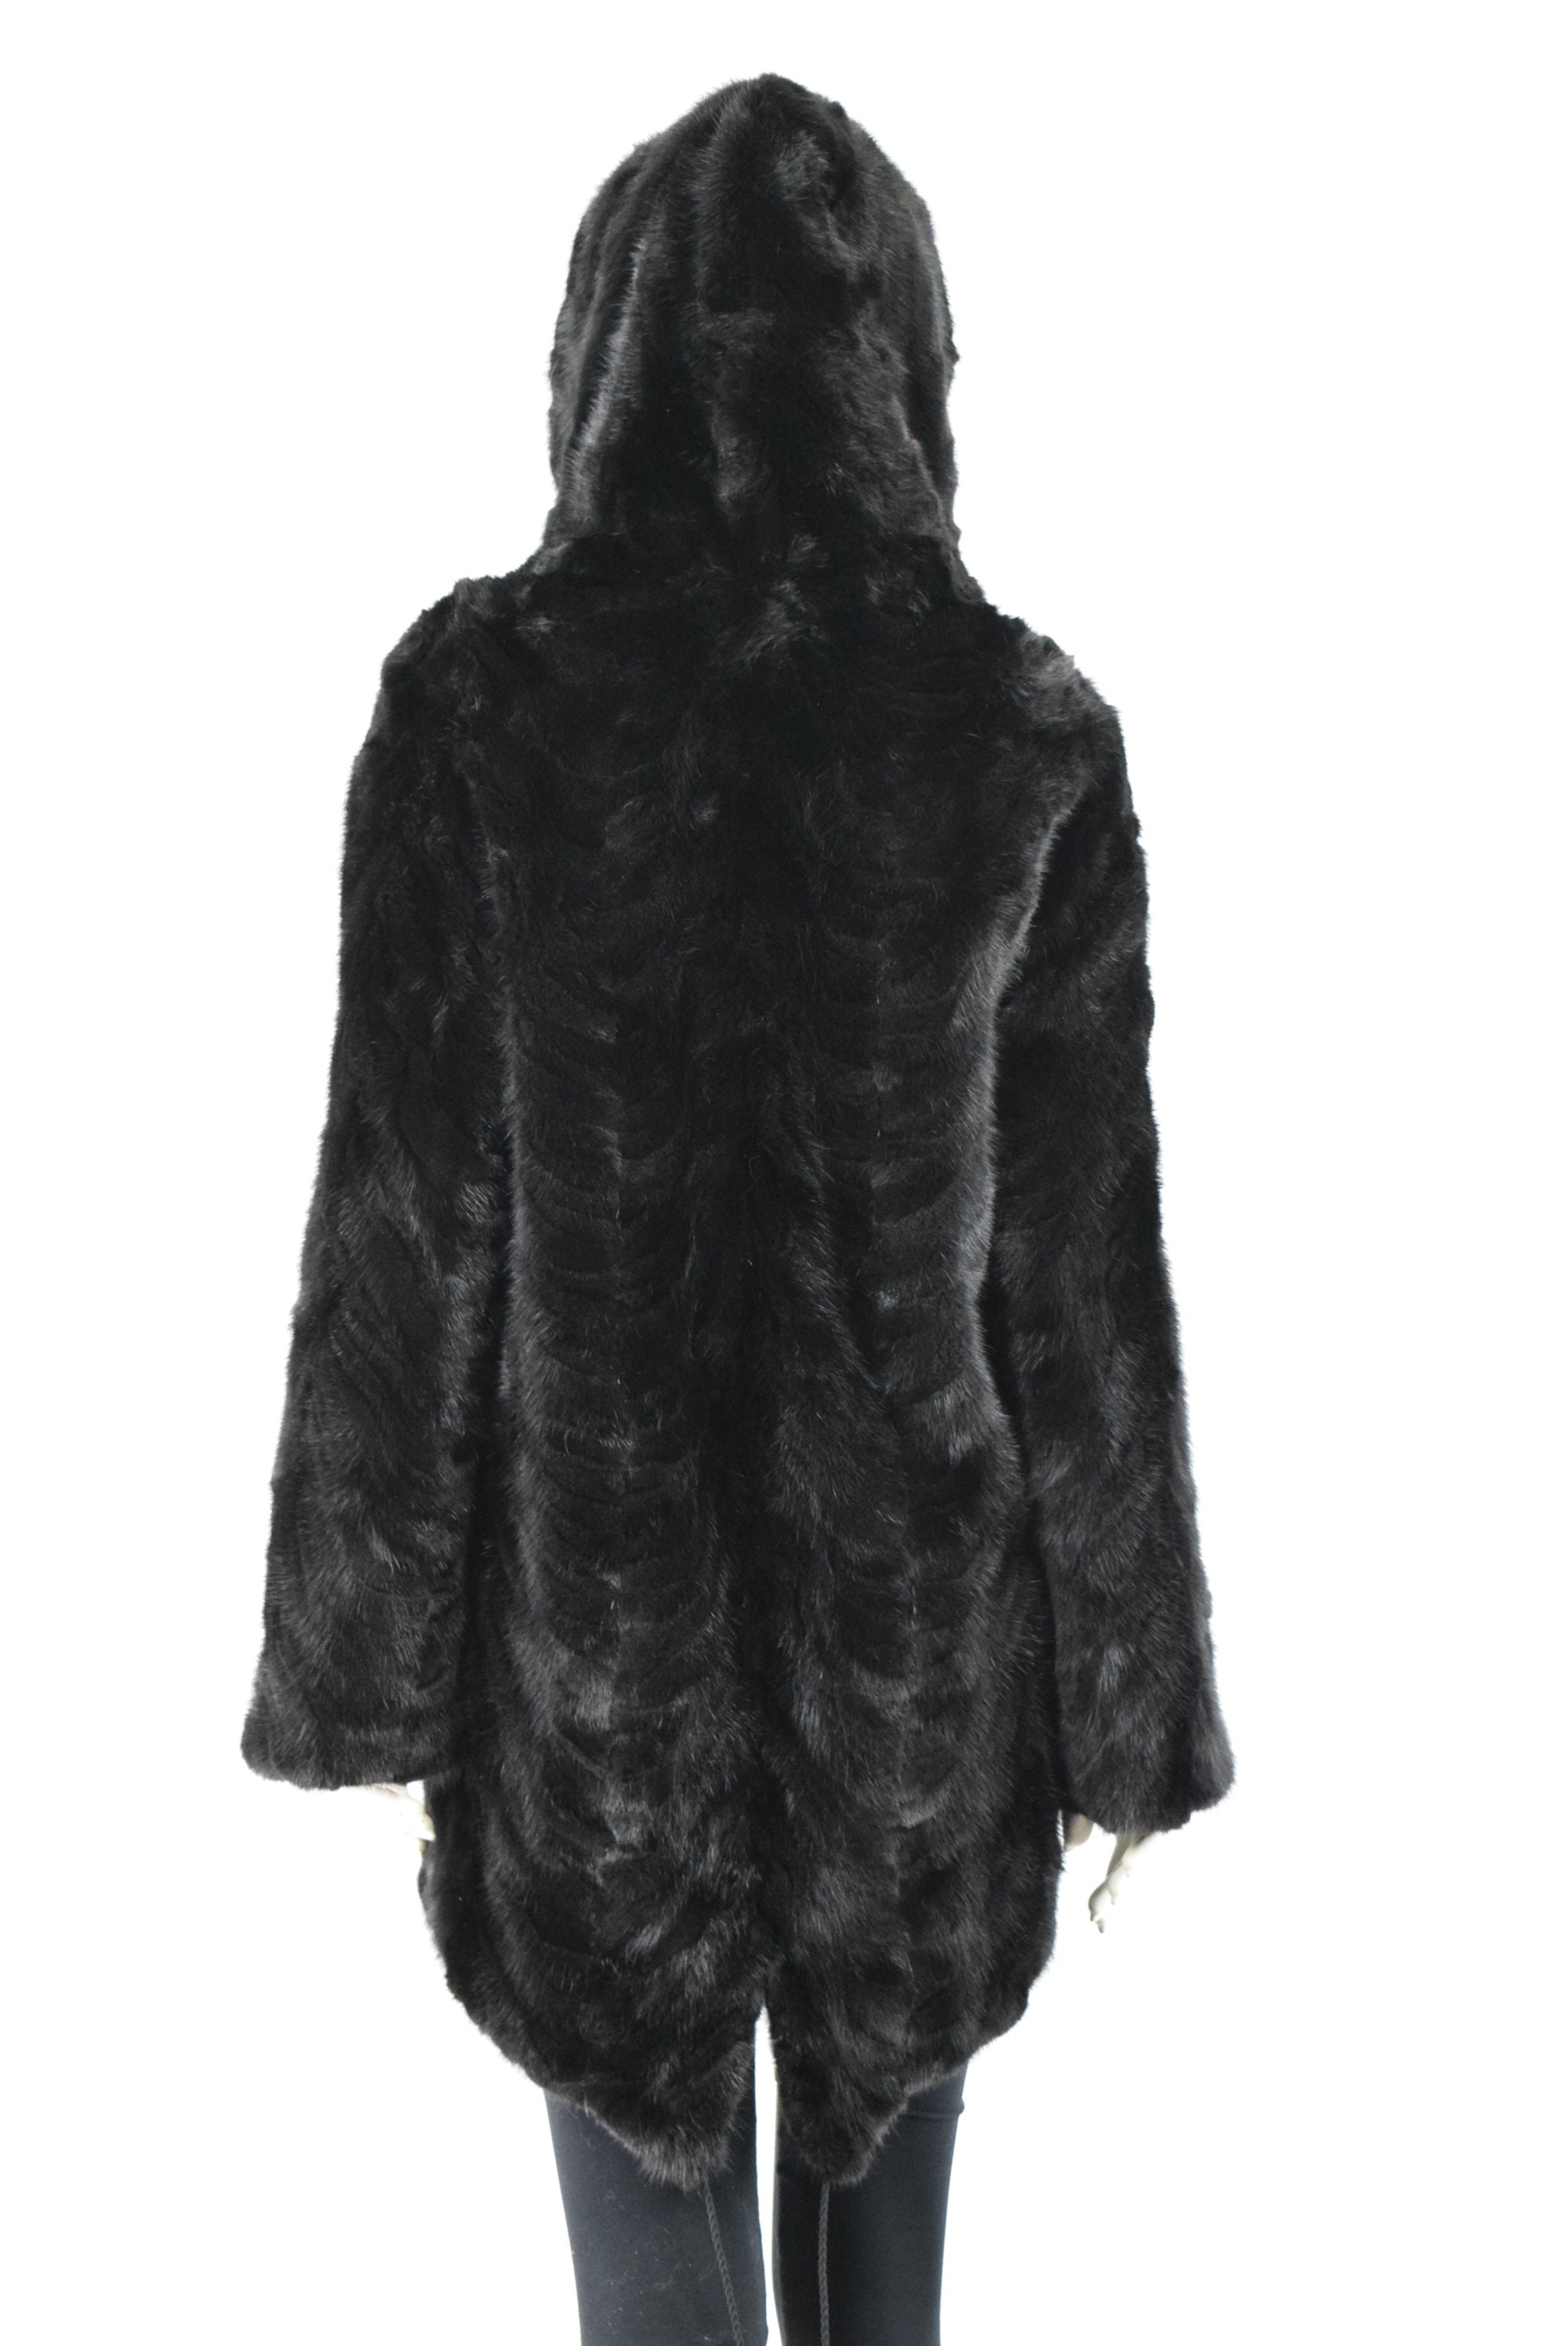 Women's Mink Fur black color unique fishtail design parka | Etsy